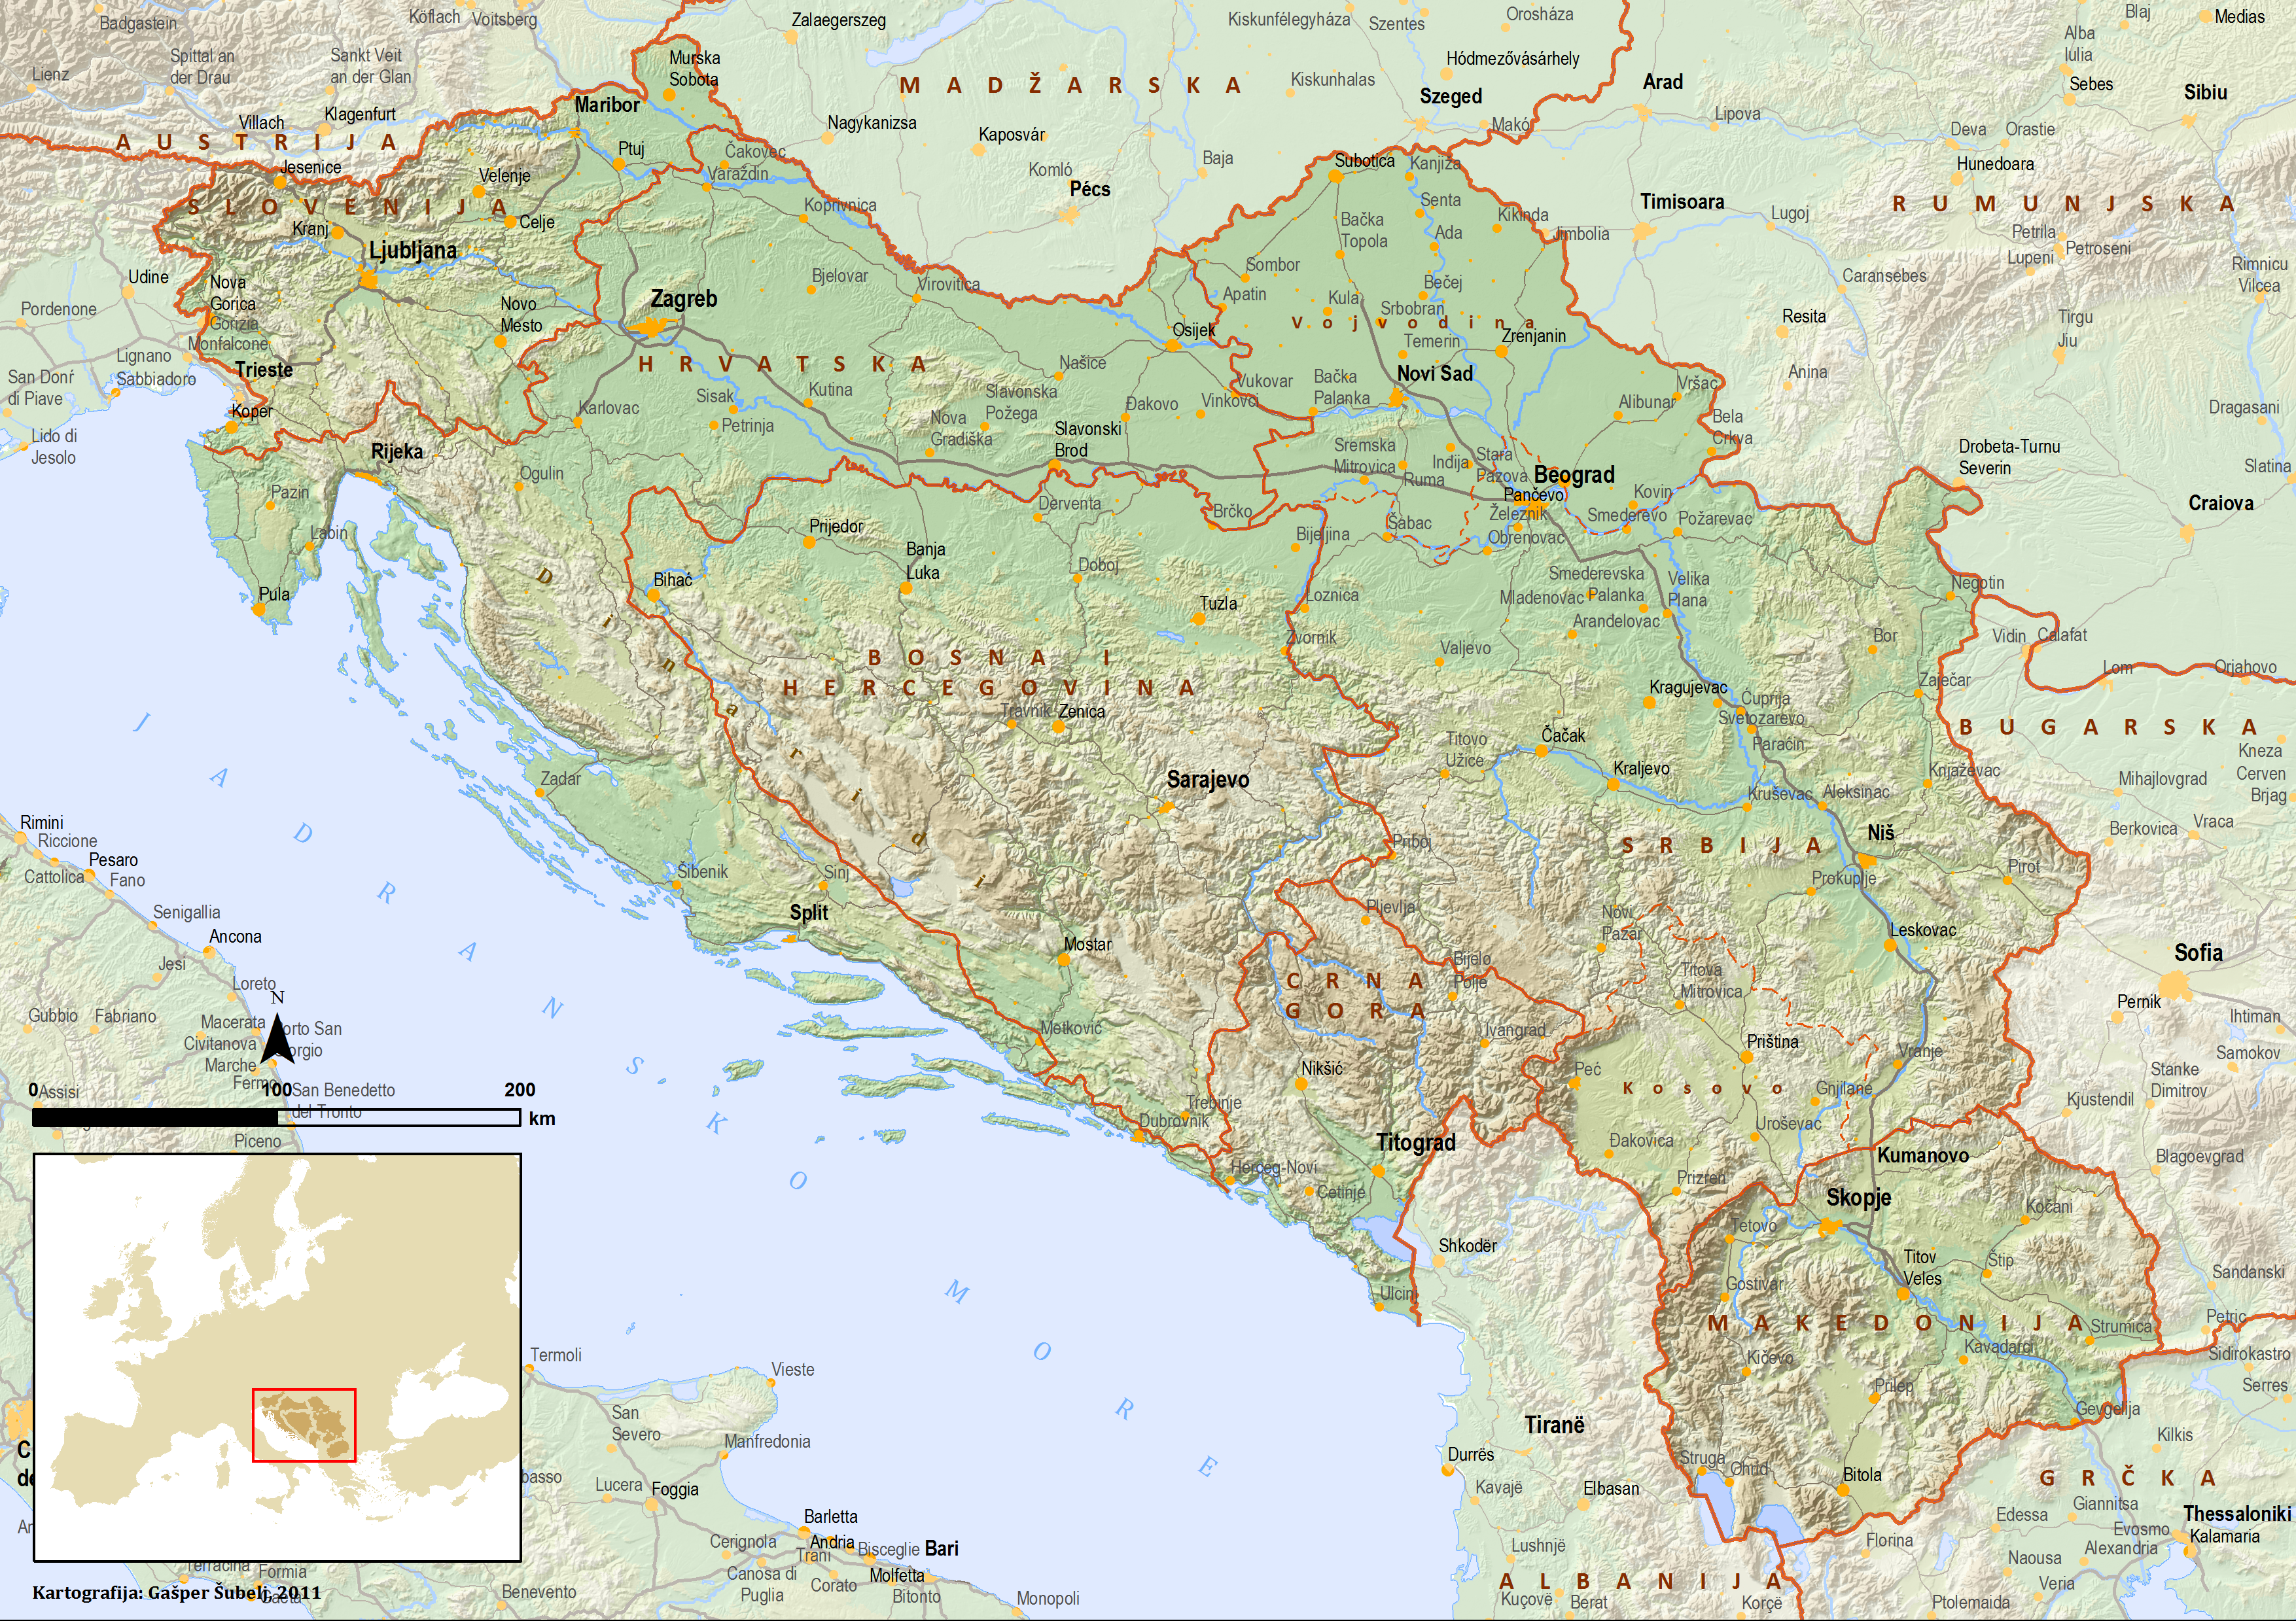 karta jugoslavije 1990 Socijalistička Federativna Republika Jugoslavija   Wikiwand karta jugoslavije 1990